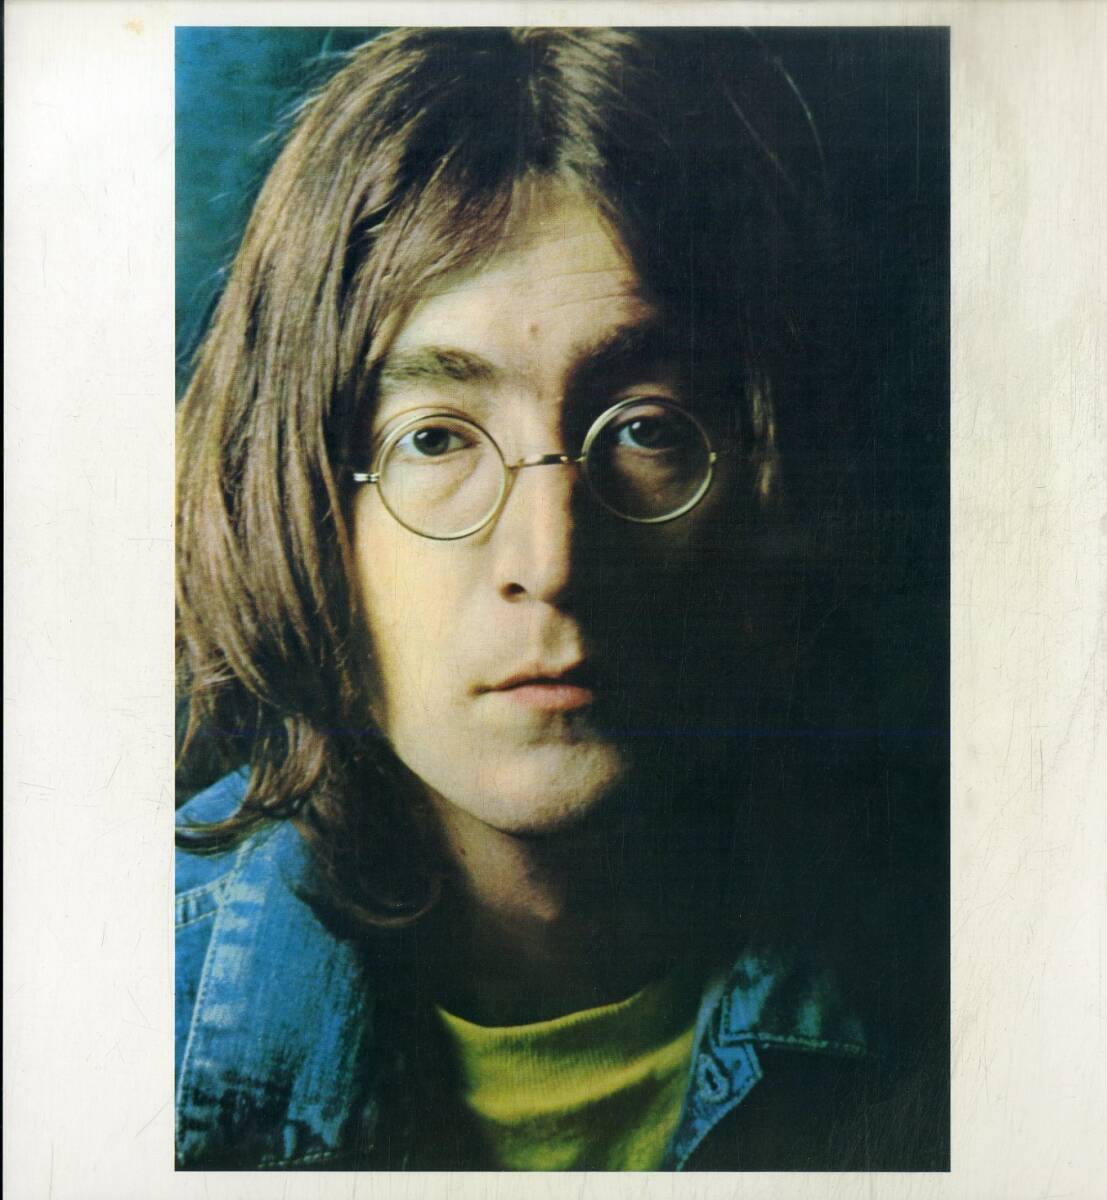 A00589524/LP2枚組/ビートルズ「The Beatles ホワイトアルバム (1976年・EAS-77001-2・エクスペリメンタル・サイケデリックロック)」の画像3